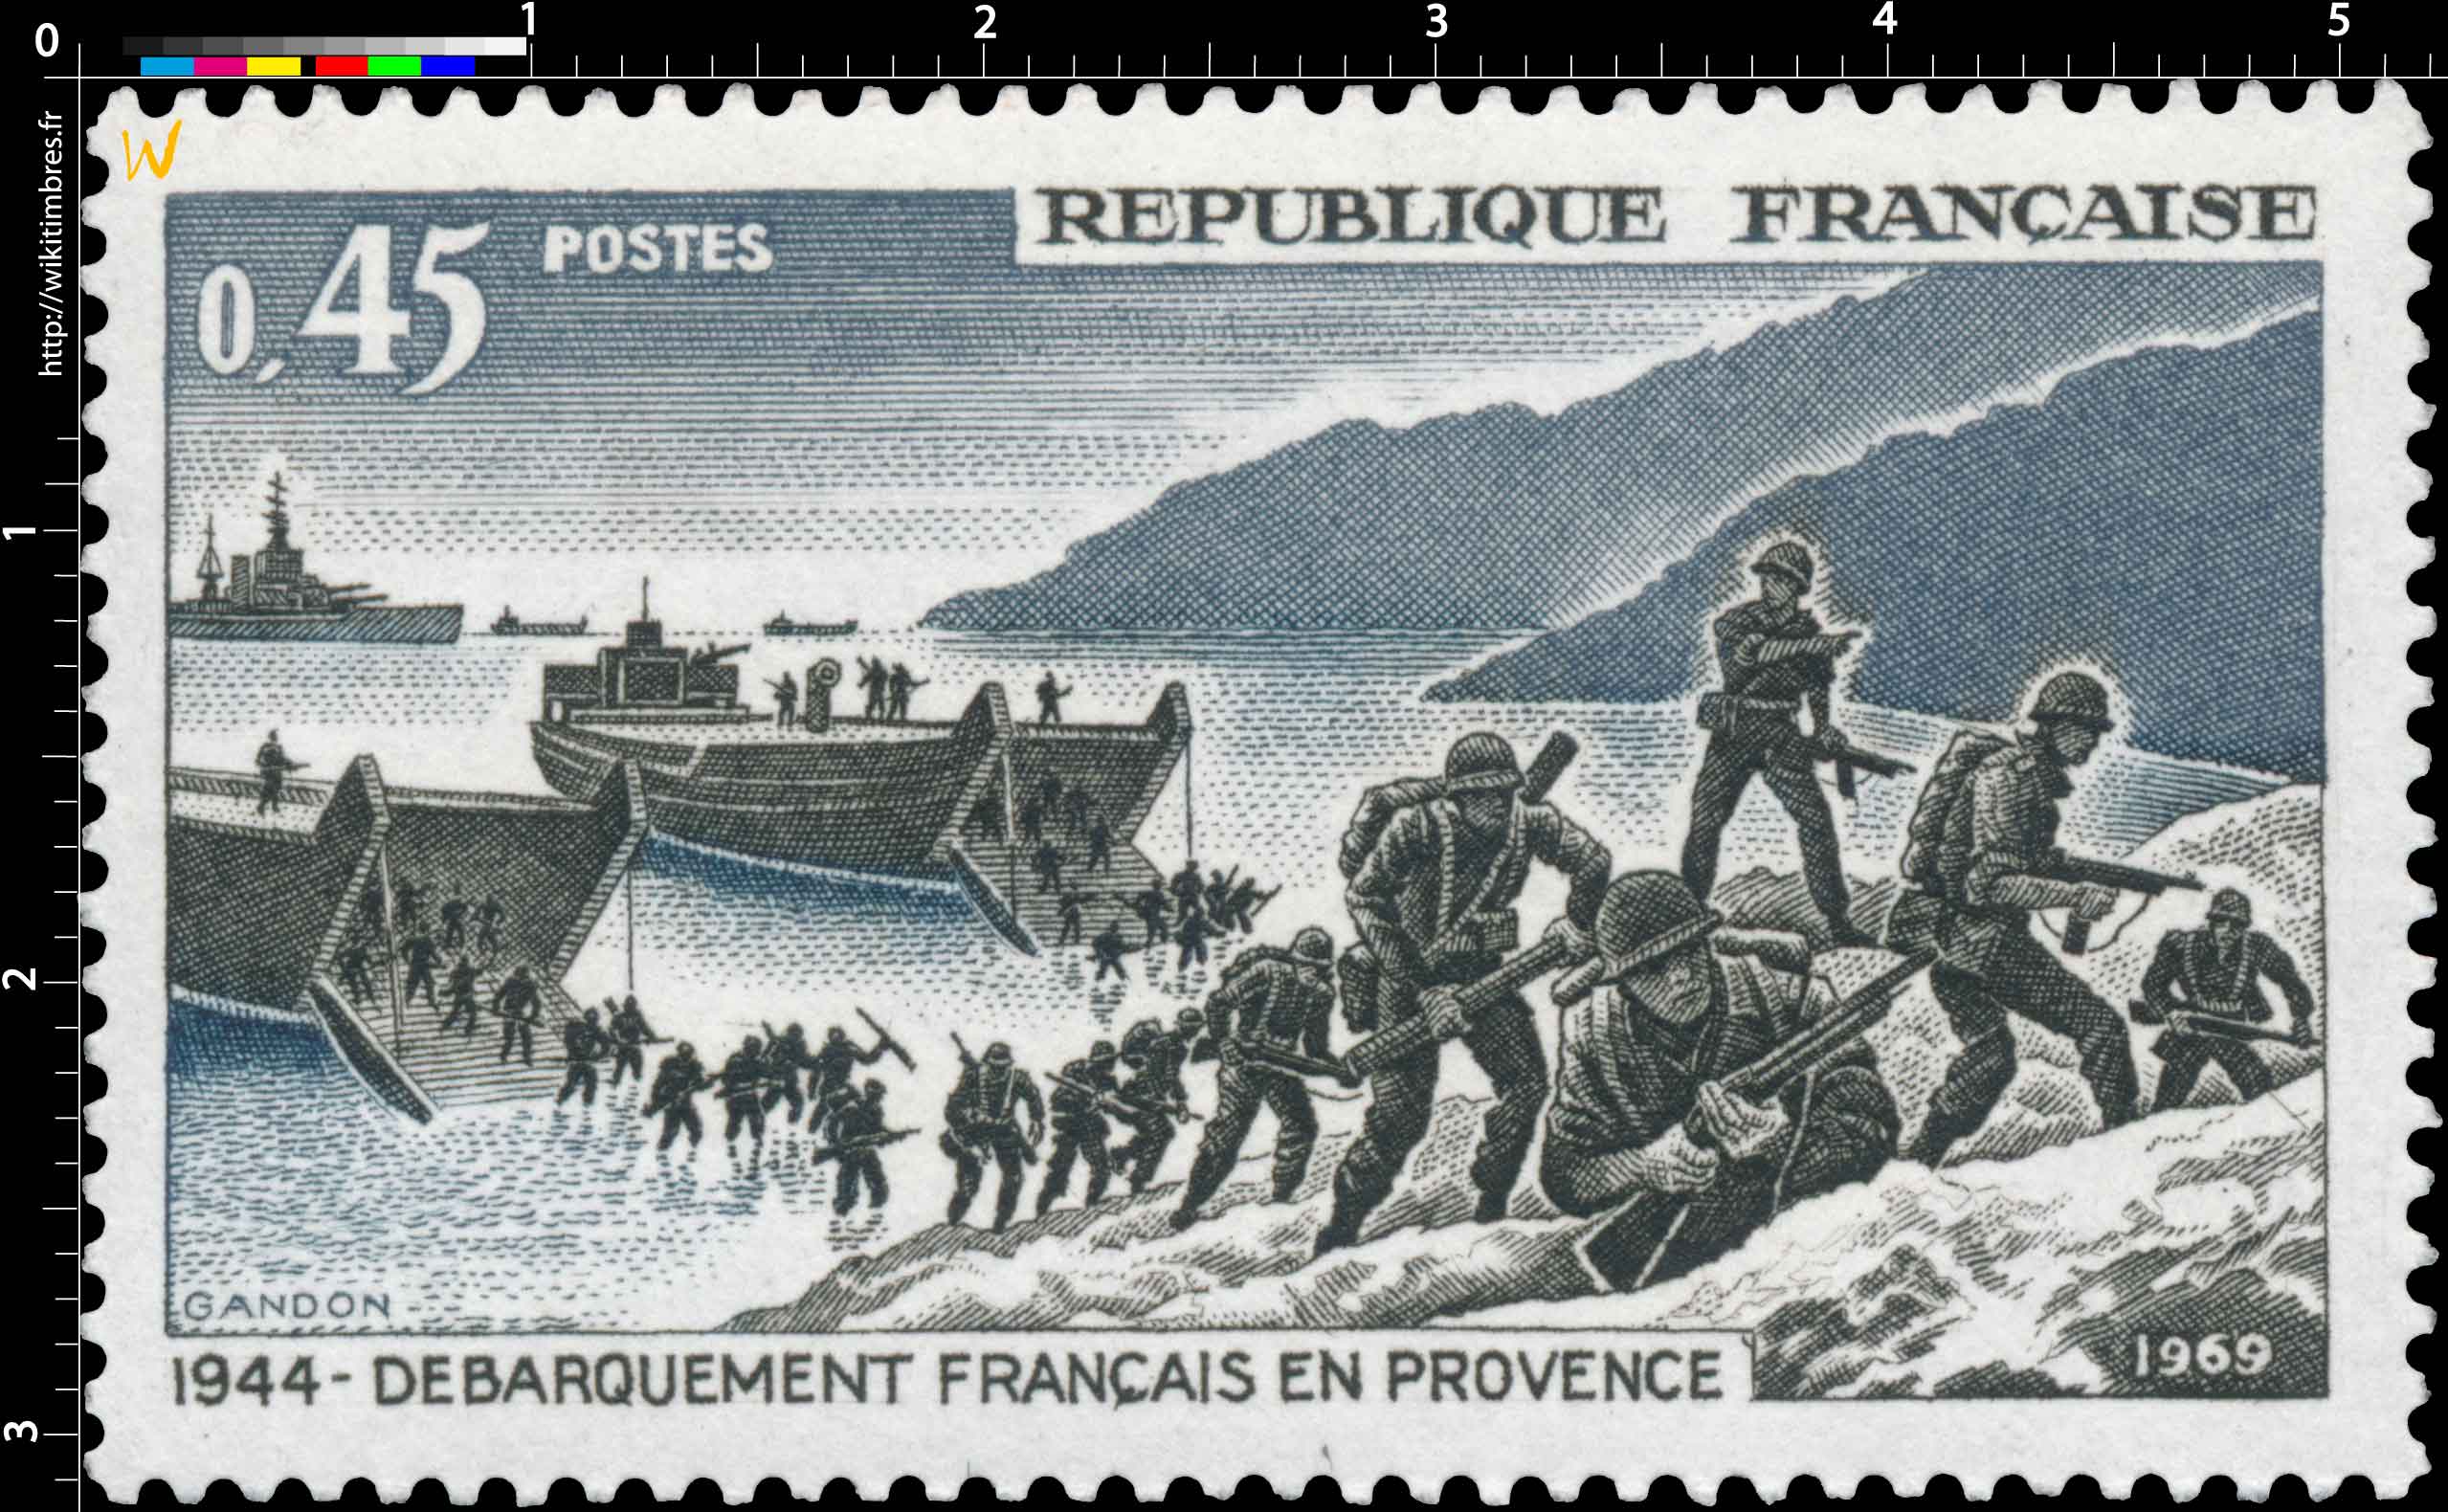 1969 DÉBARQUEMENT FRANÇAIS EN PROVENCE